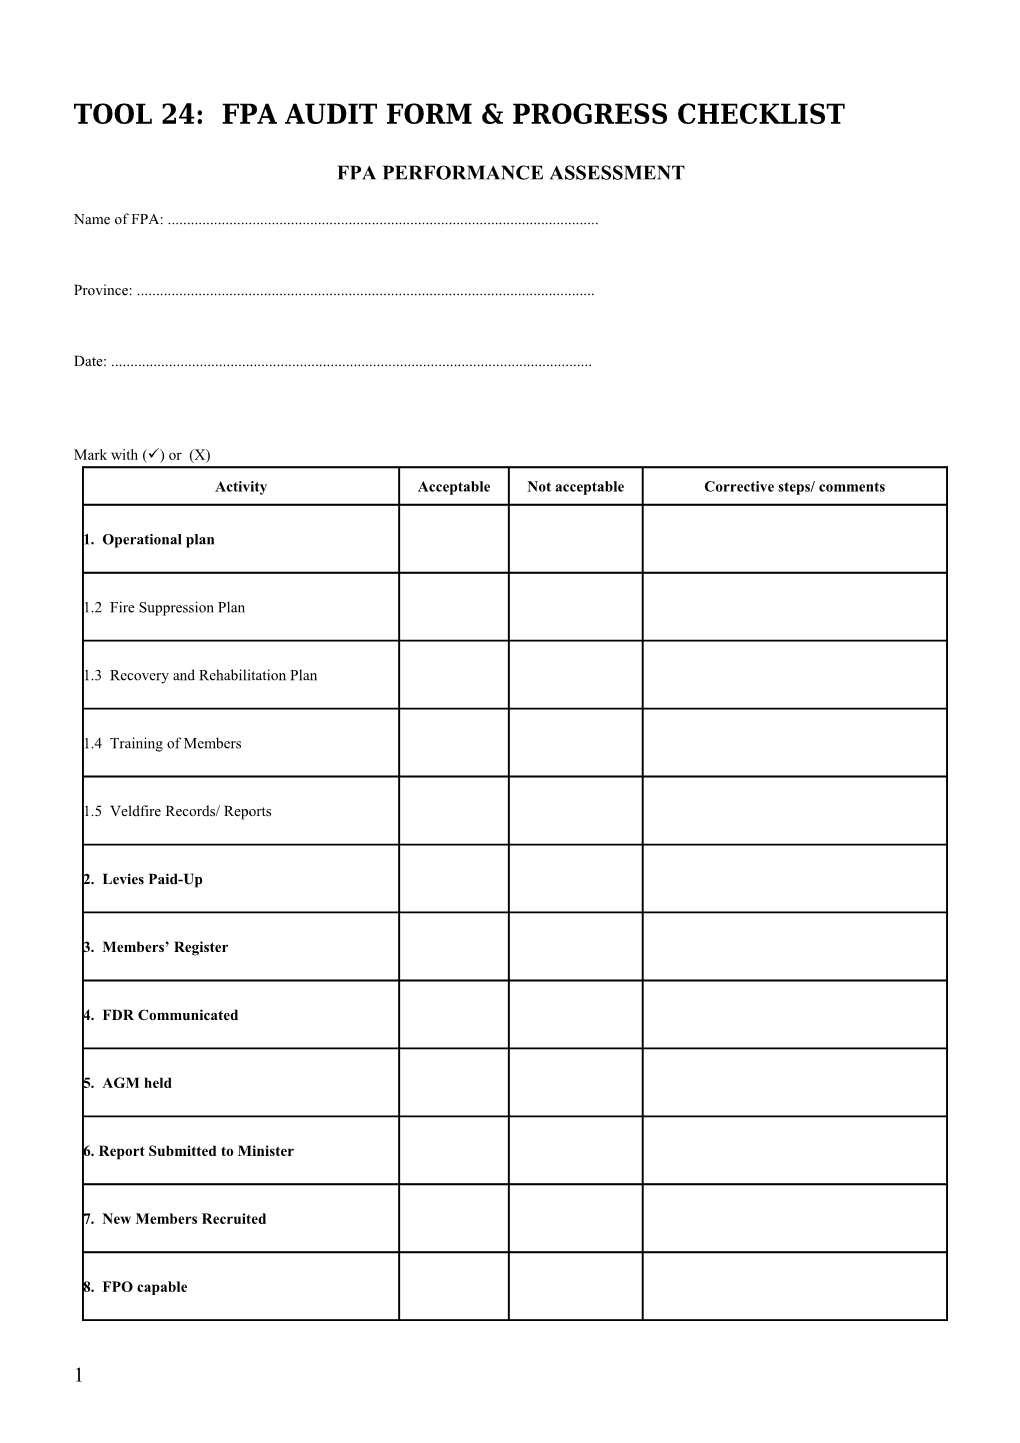 Tool 24: Fpa Audit Form & Progress Checklist